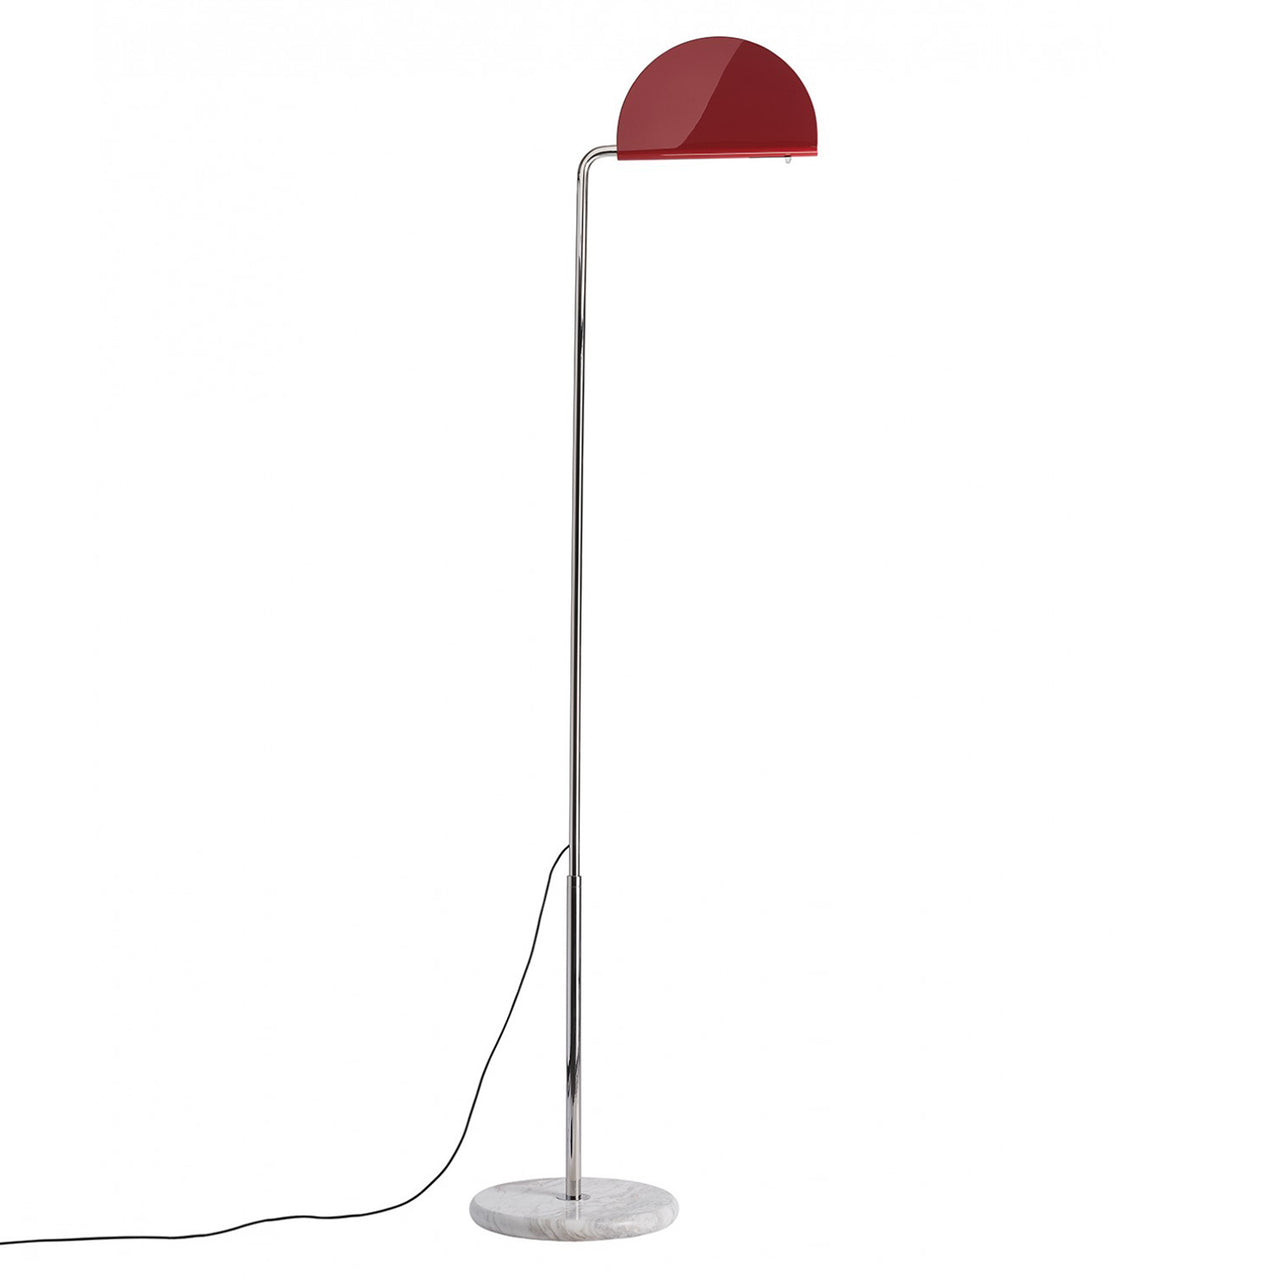 Mezzaluna Floor Lamp: Glossy Red